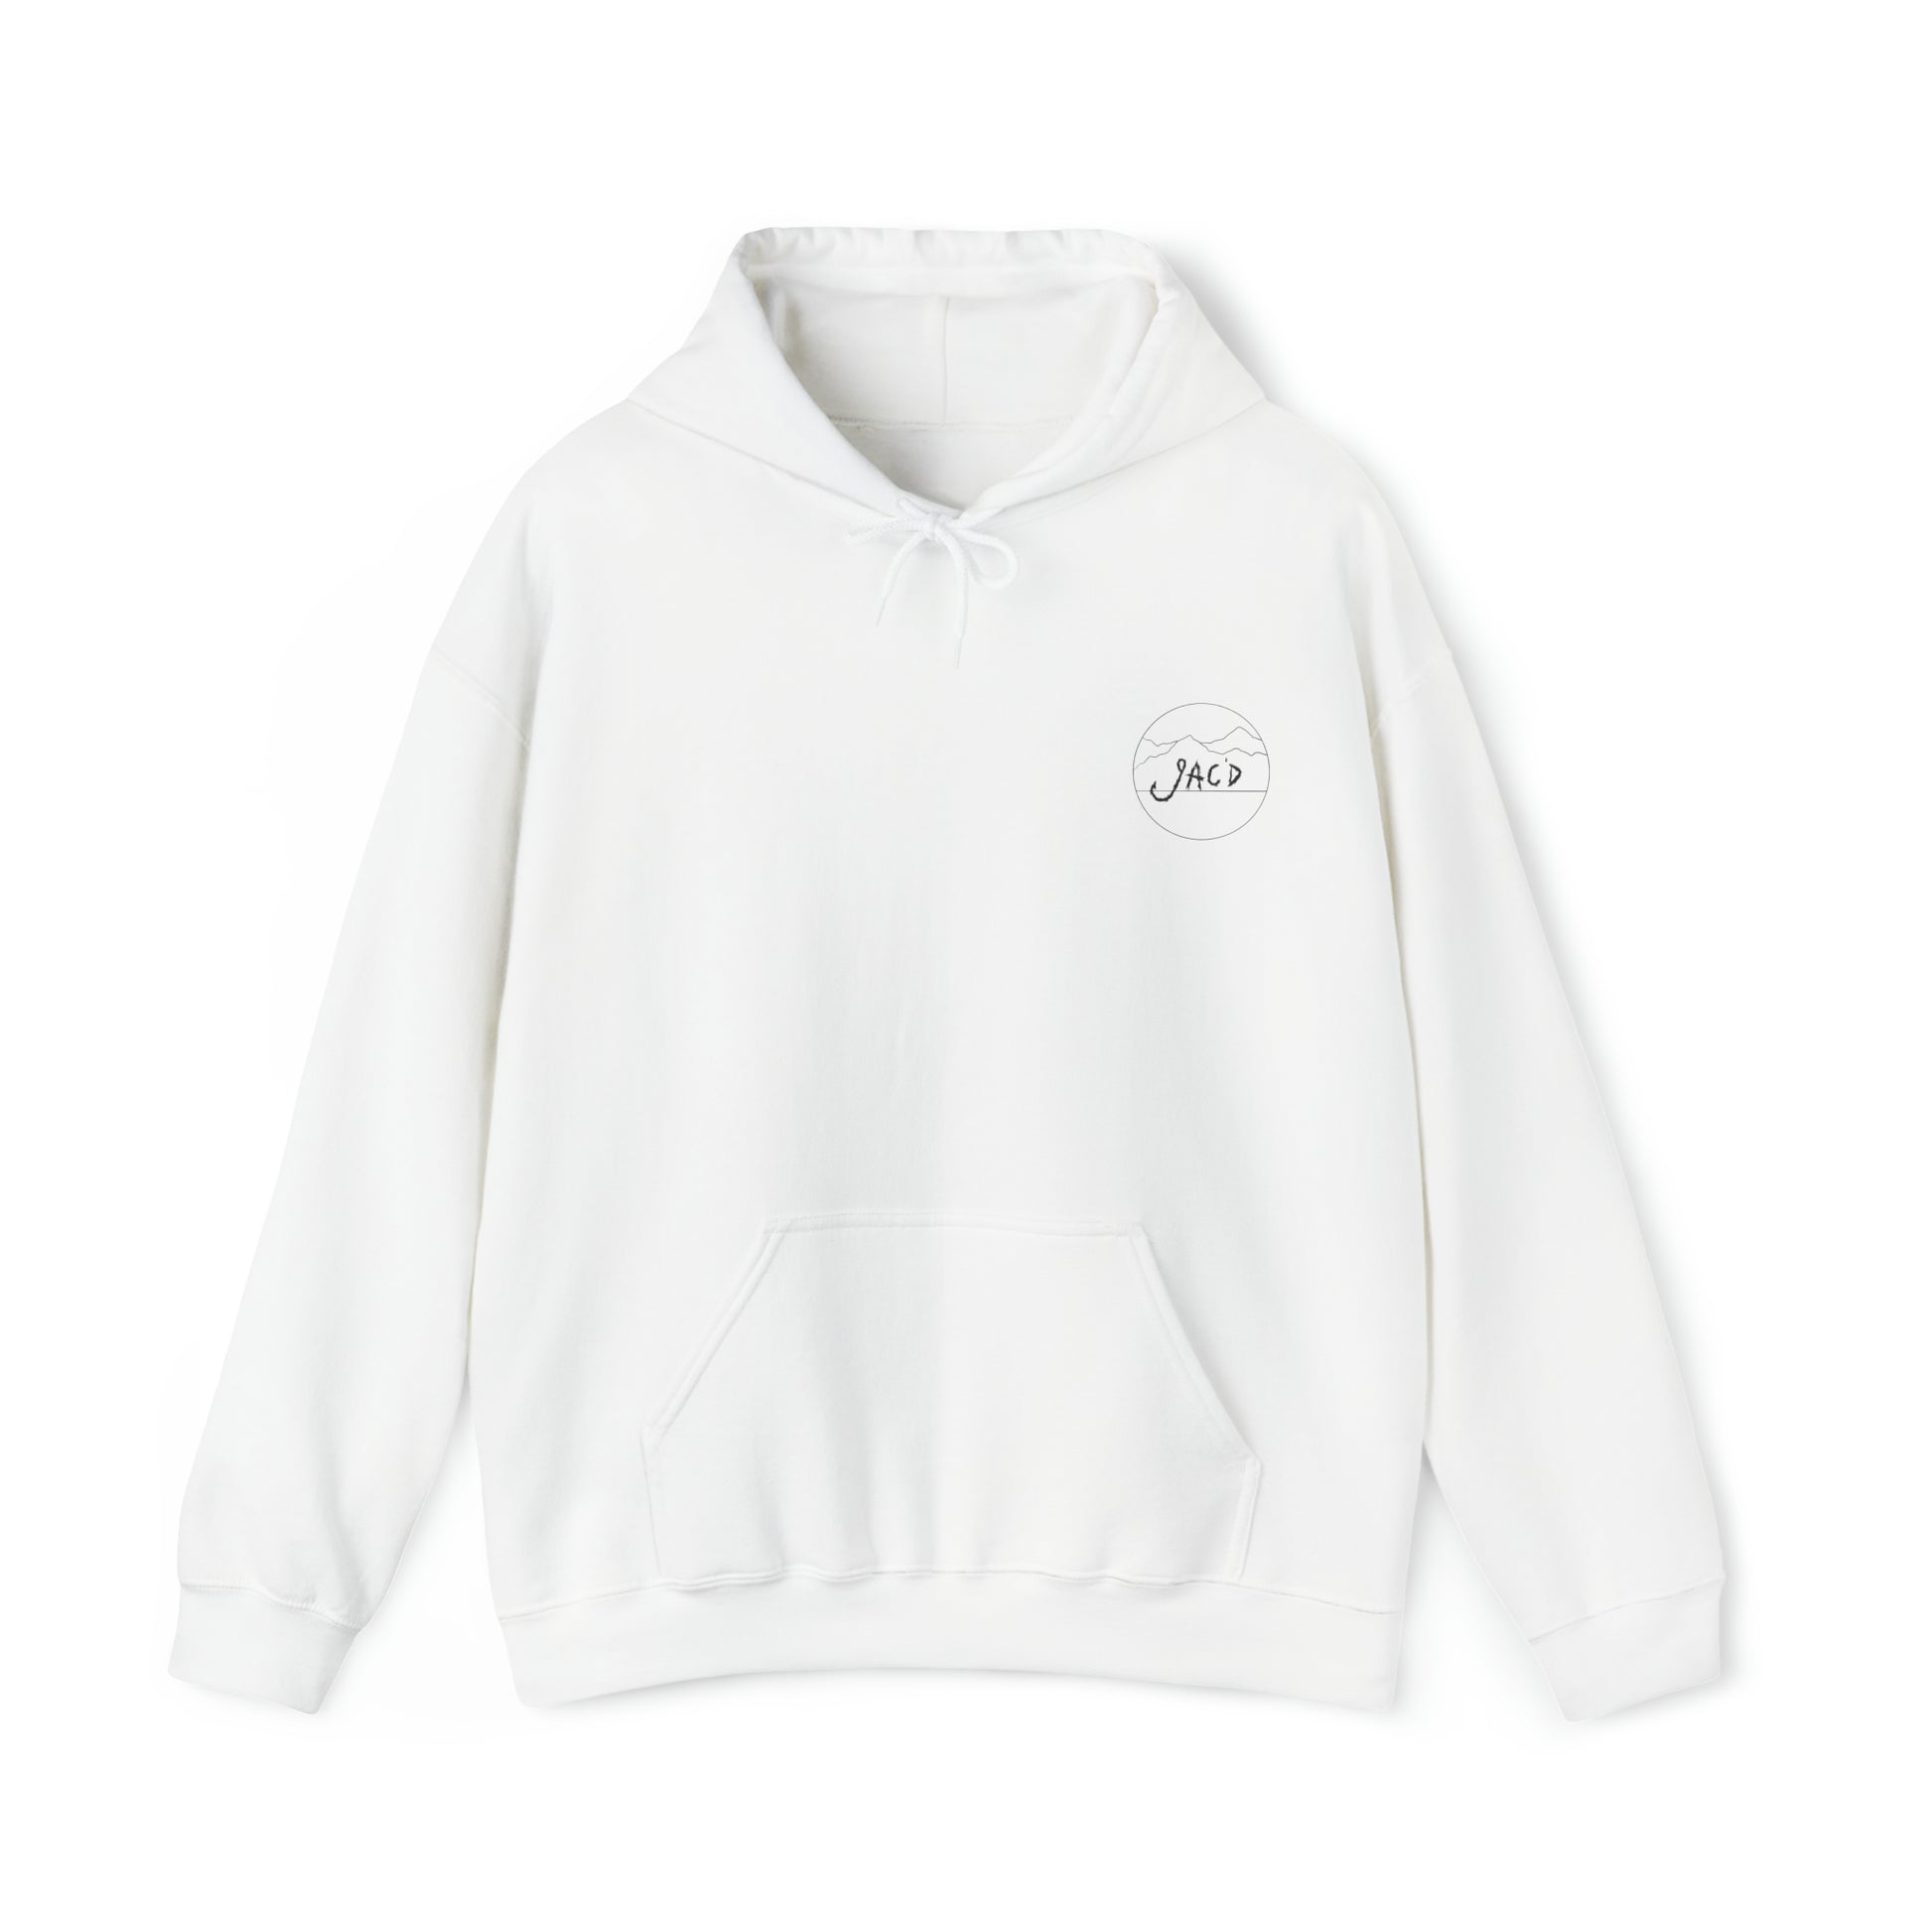 American Messy Bun - Heavy Blend™ Hooded Sweatshirt - Premium Hoodie from Printify - Just $44.99! Shop now at JAC’D